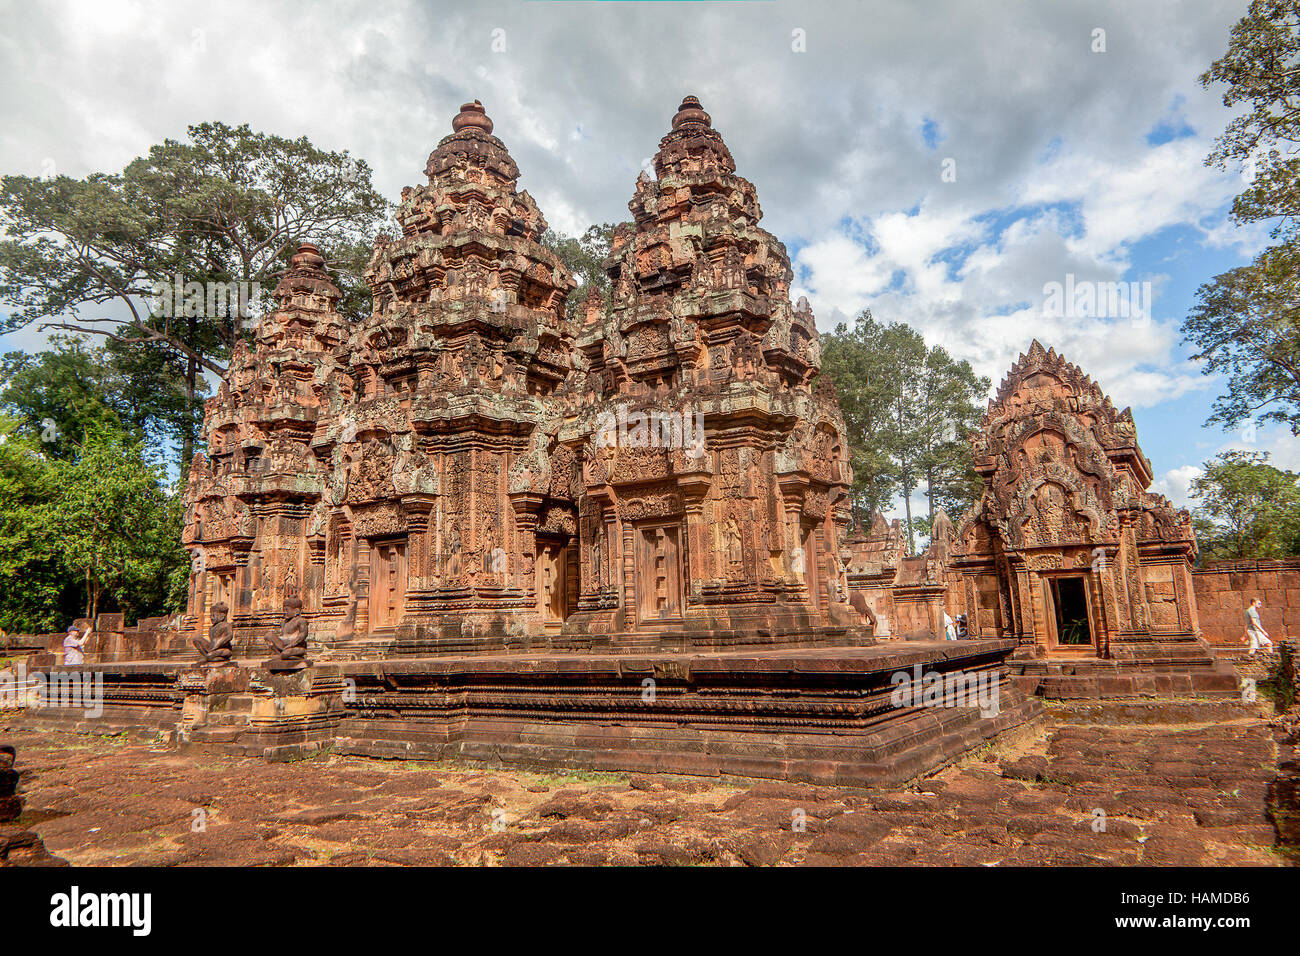 Das innere Heiligtum und Türme der Banteay Srei, ein 10. Jahrhundert aus rotem Sandstein-Tempel in Kambodscha Shiva geweiht. Stockfoto